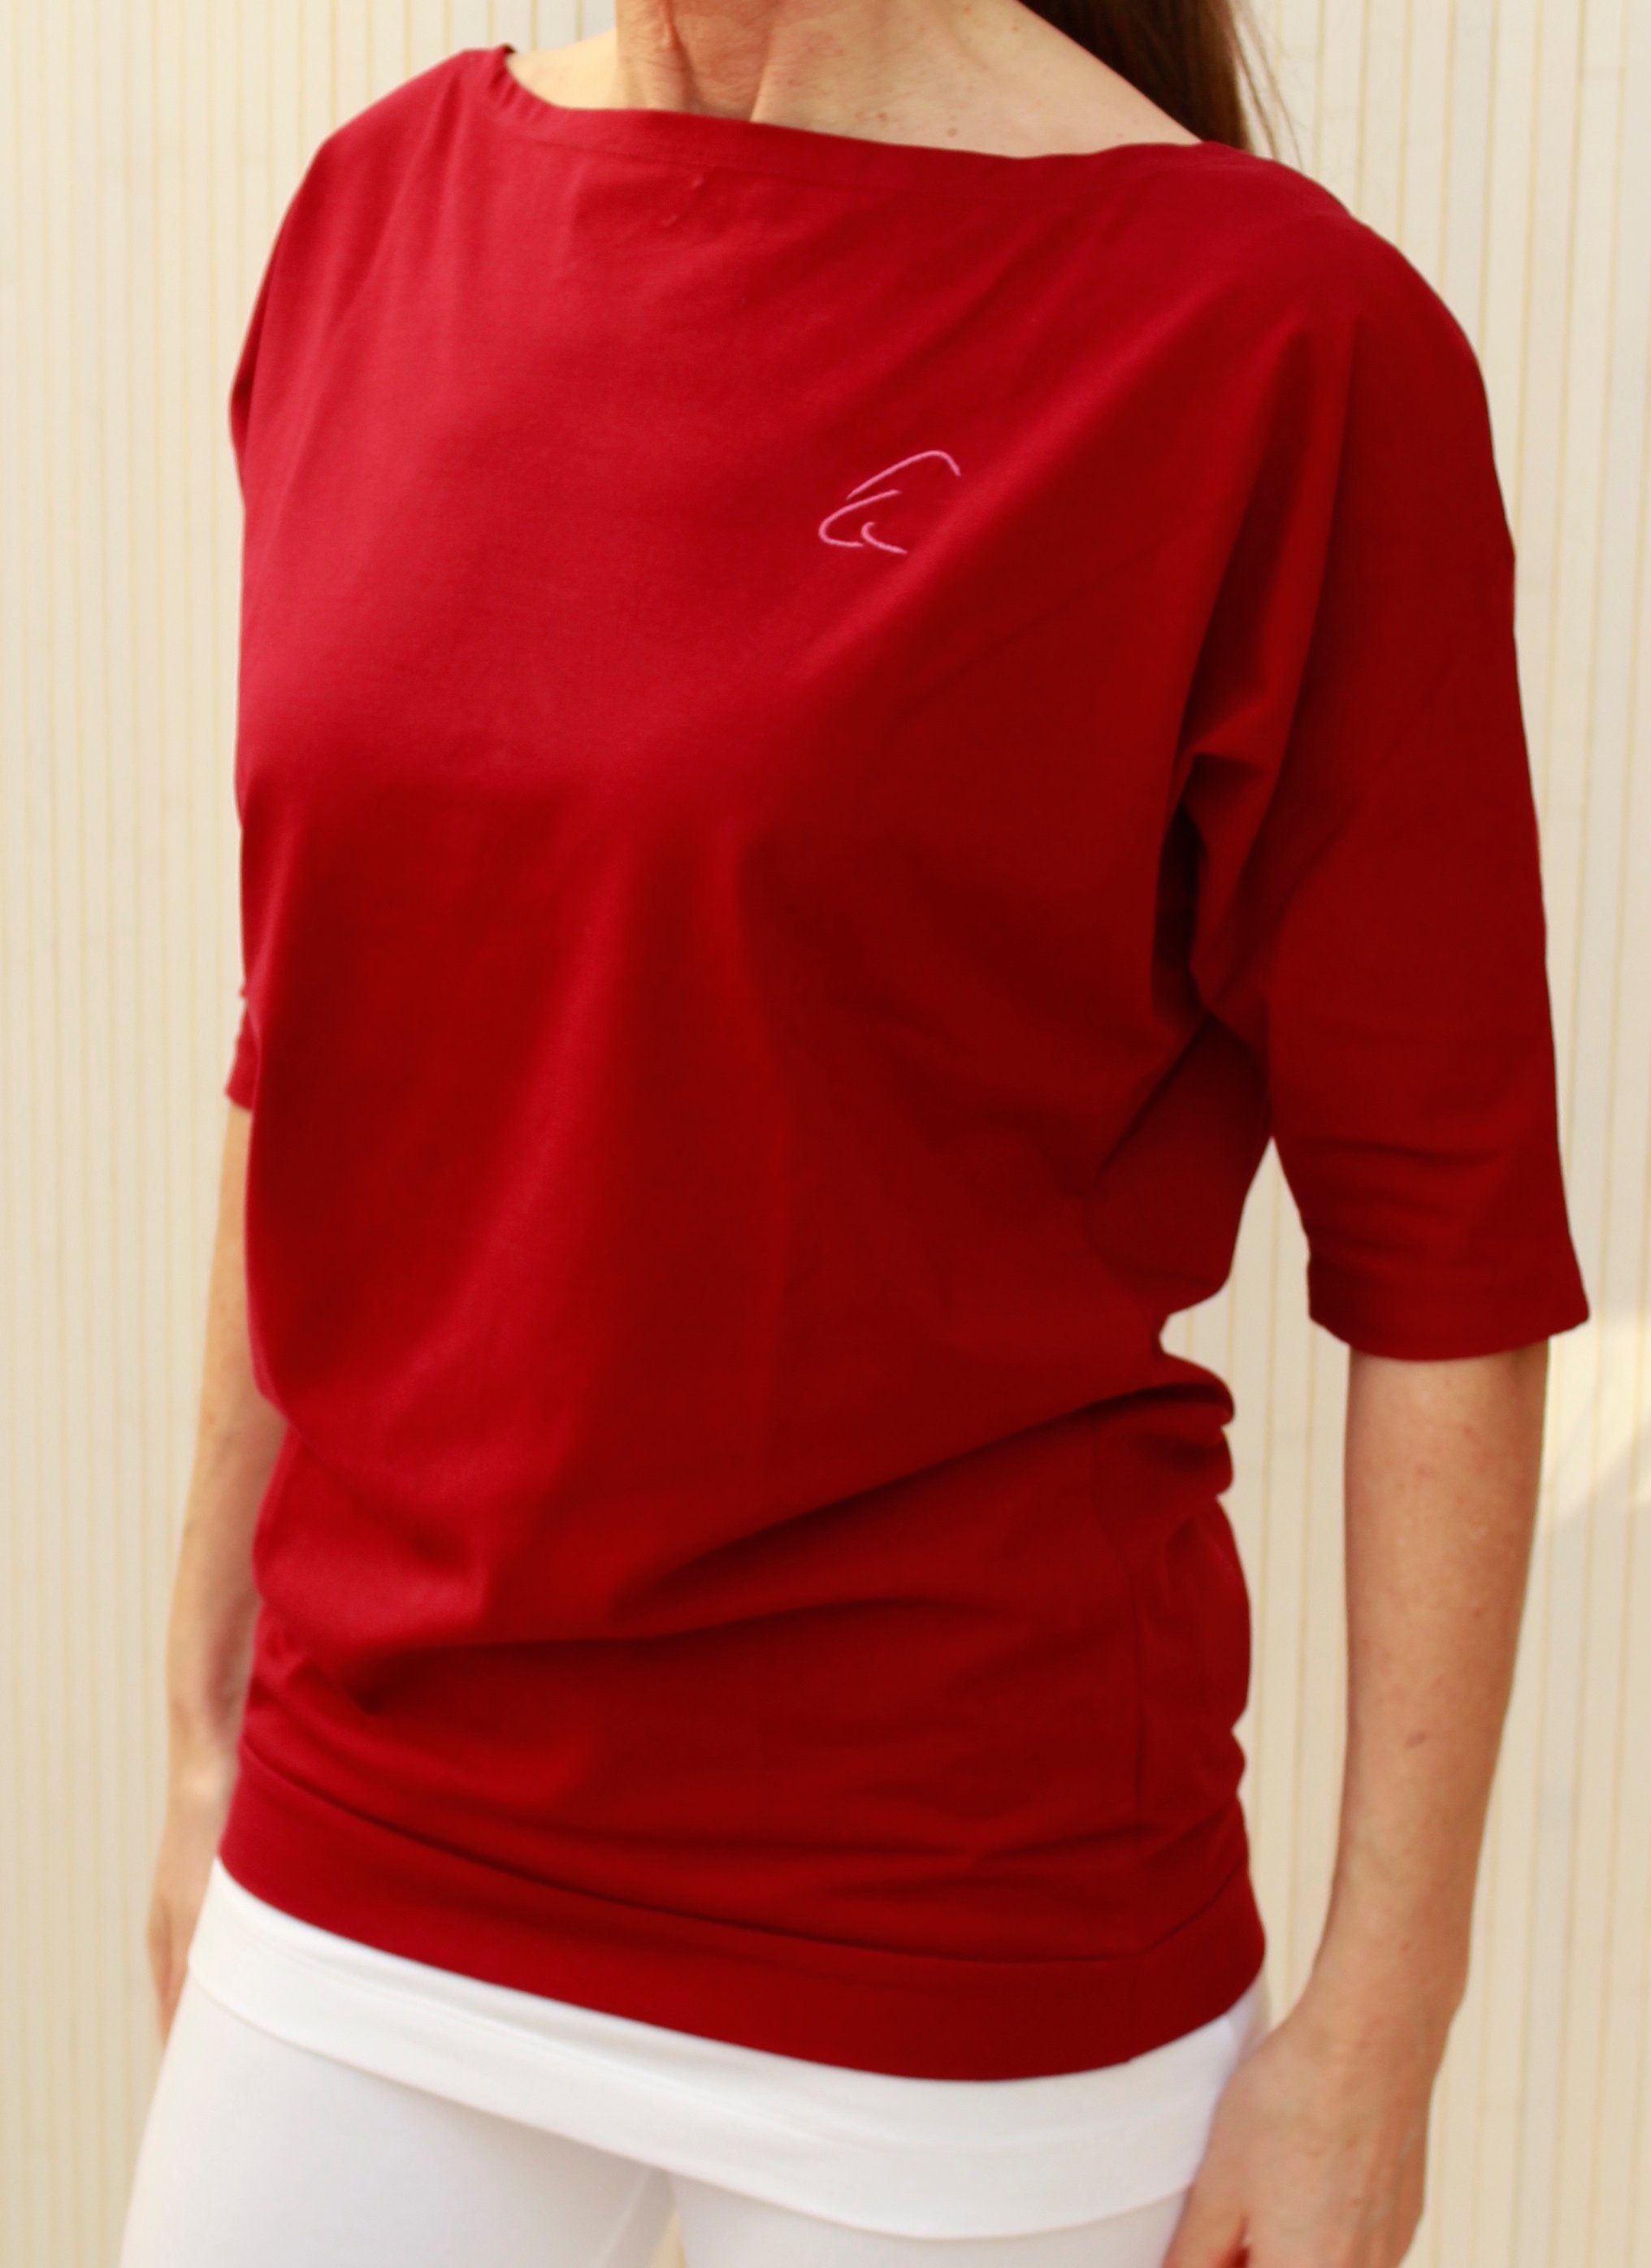 ESPARTO Yogashirt Wohlfühlshirt Bio-Baumwolle Sadaa in breitem (U-Boot-Ausschnitt) mit Granatrot Schulterausschnitt Halbarmshirt